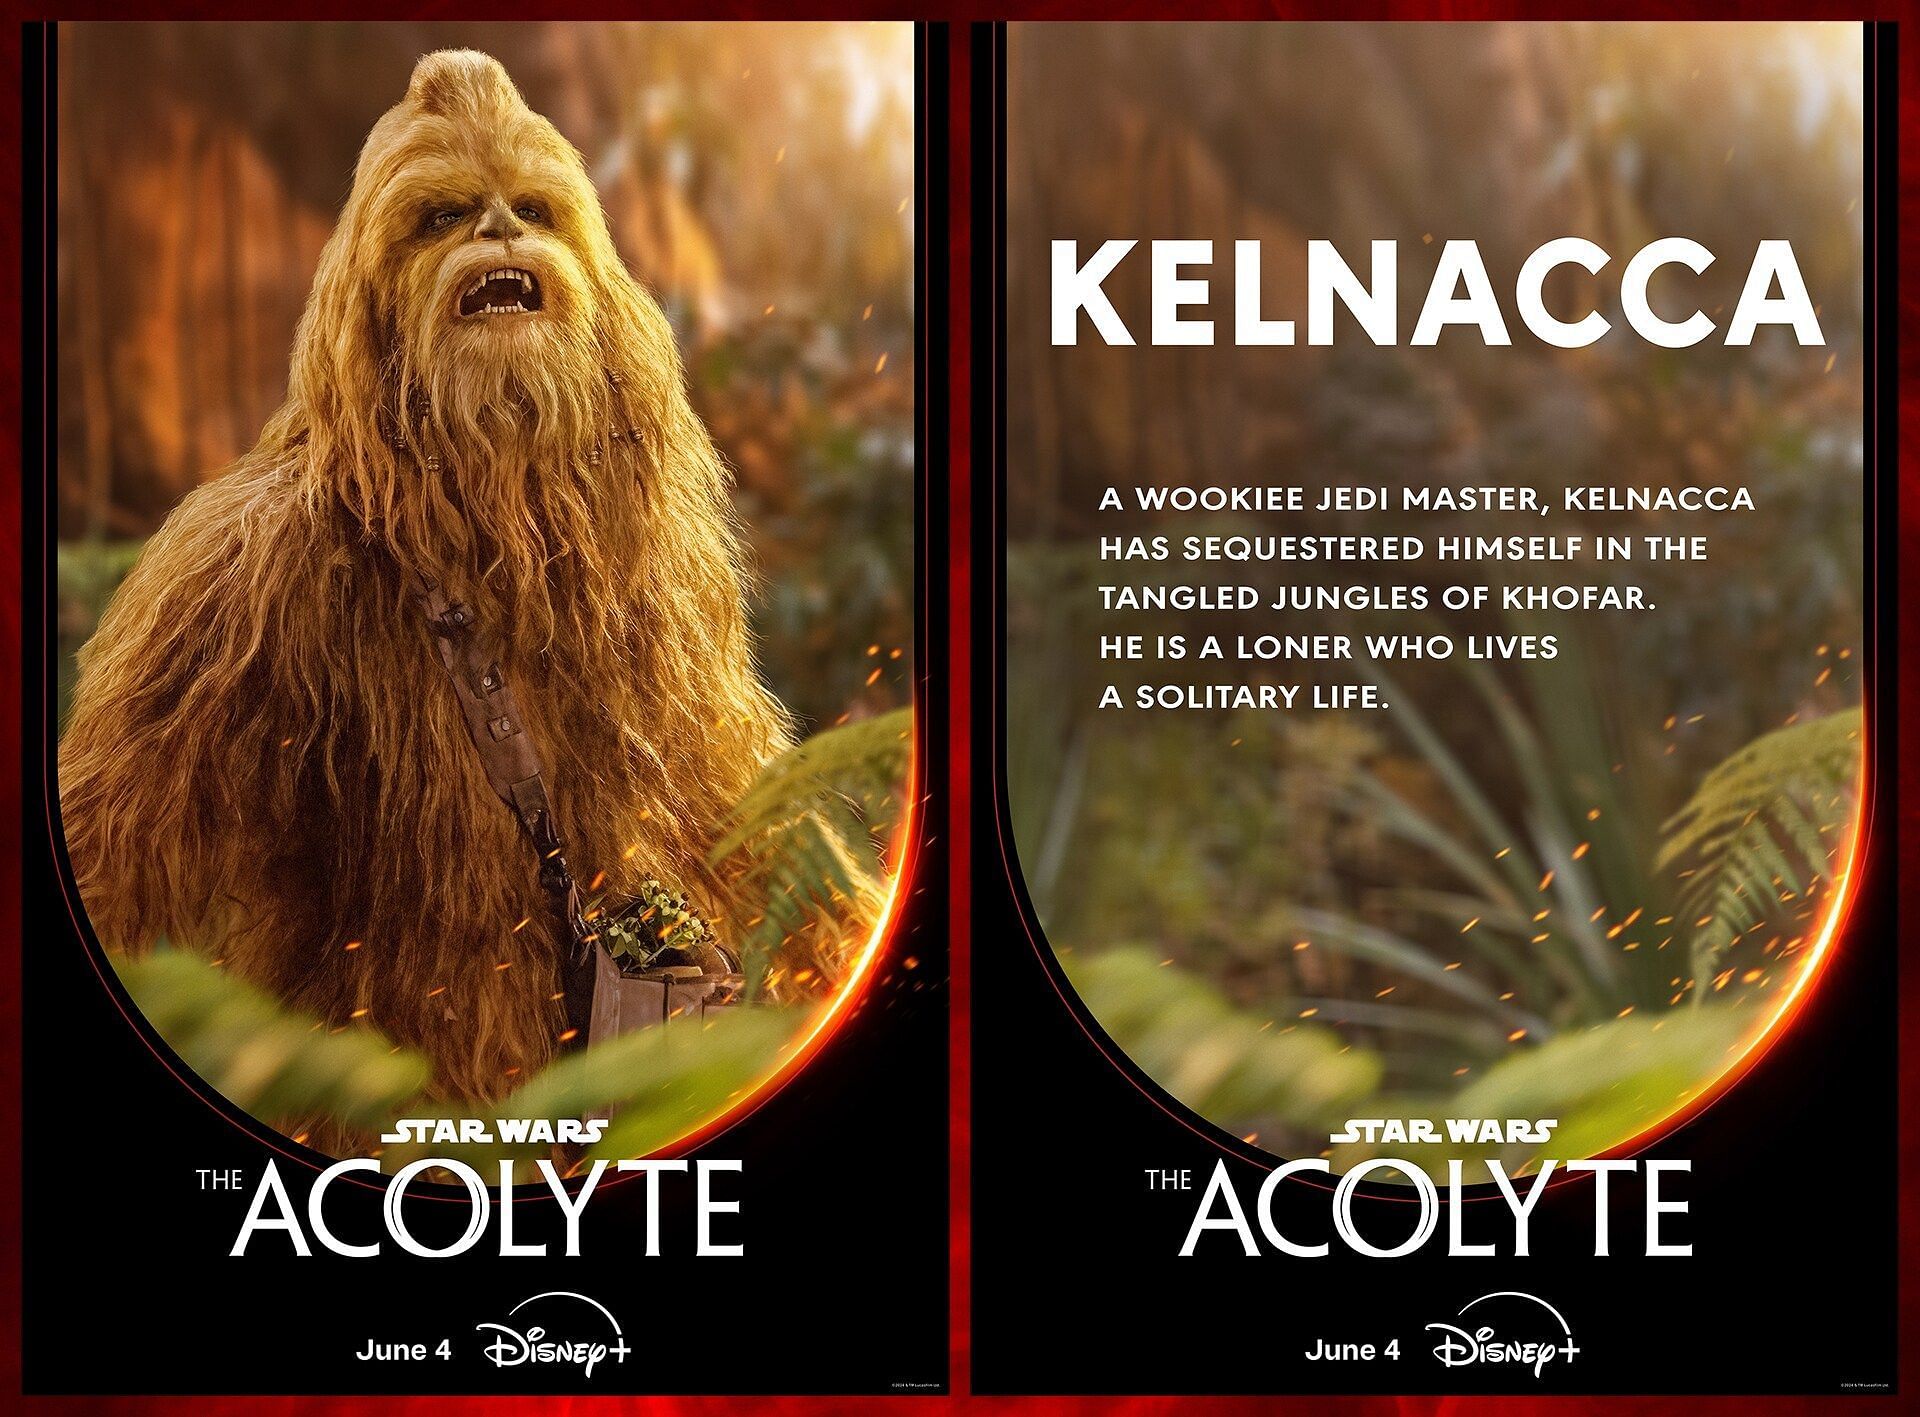 Jedi Master Kelnacca in The Acolyte (Image via Star Wars)